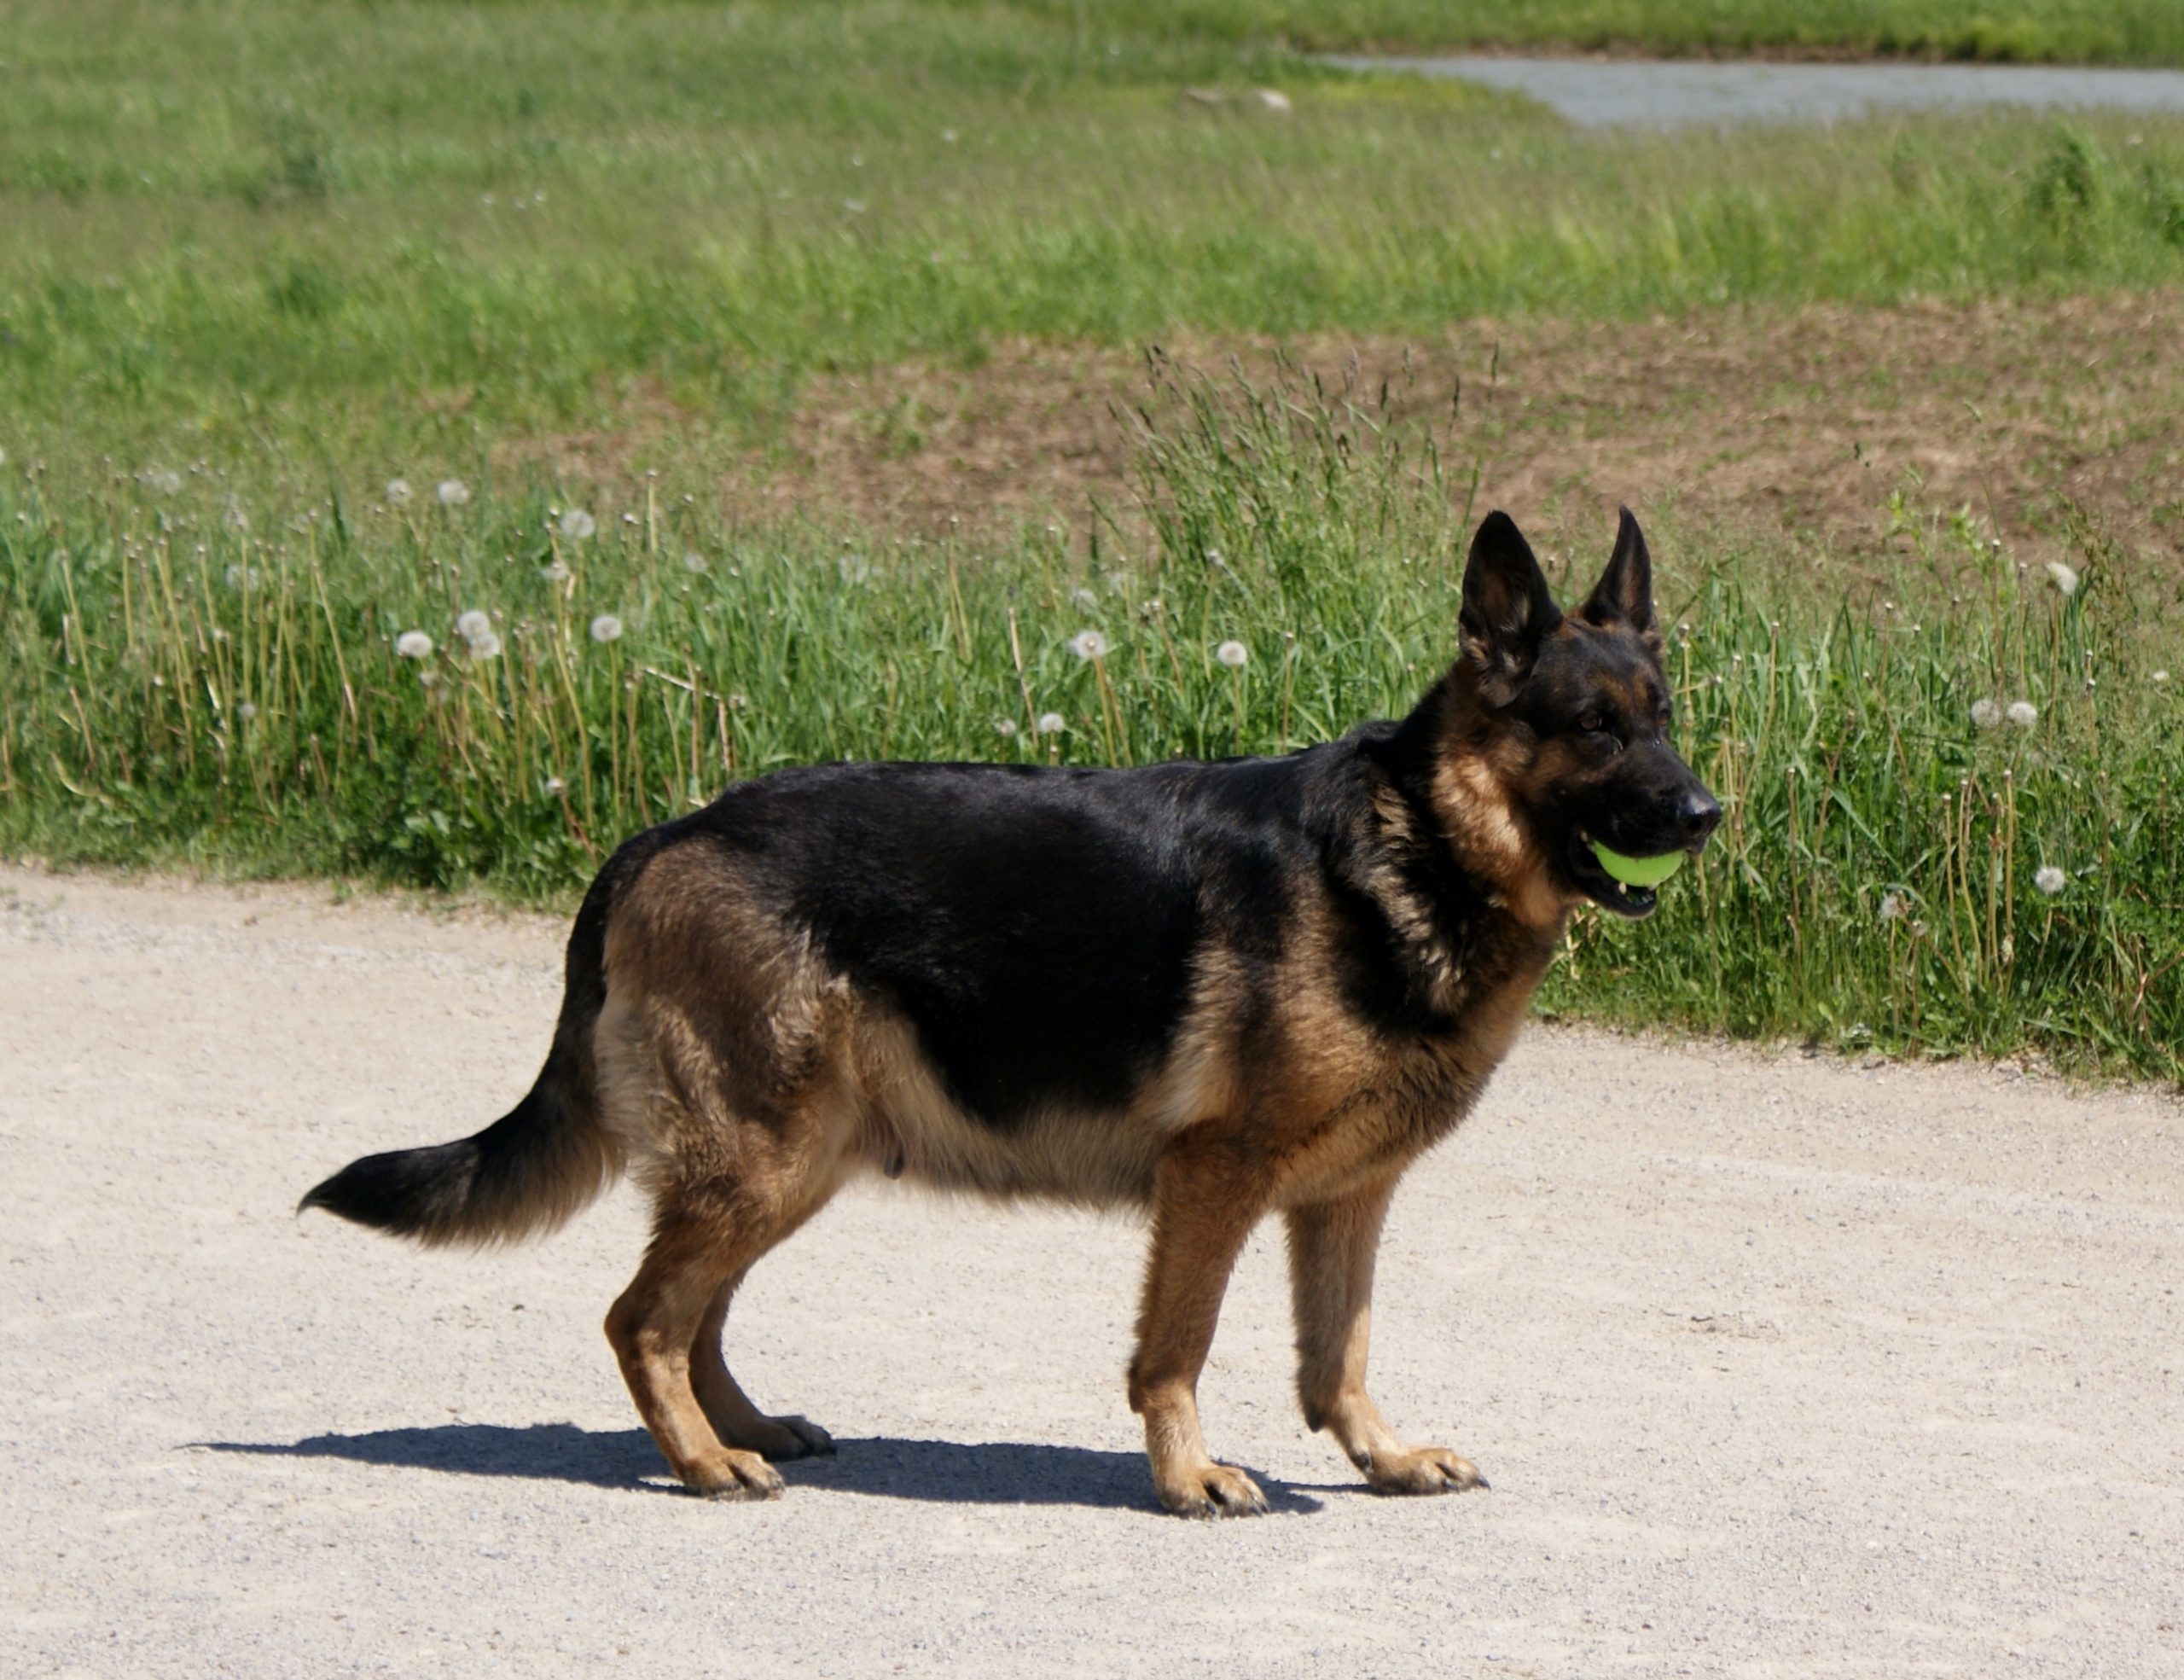 German_Shepherd_Puppies